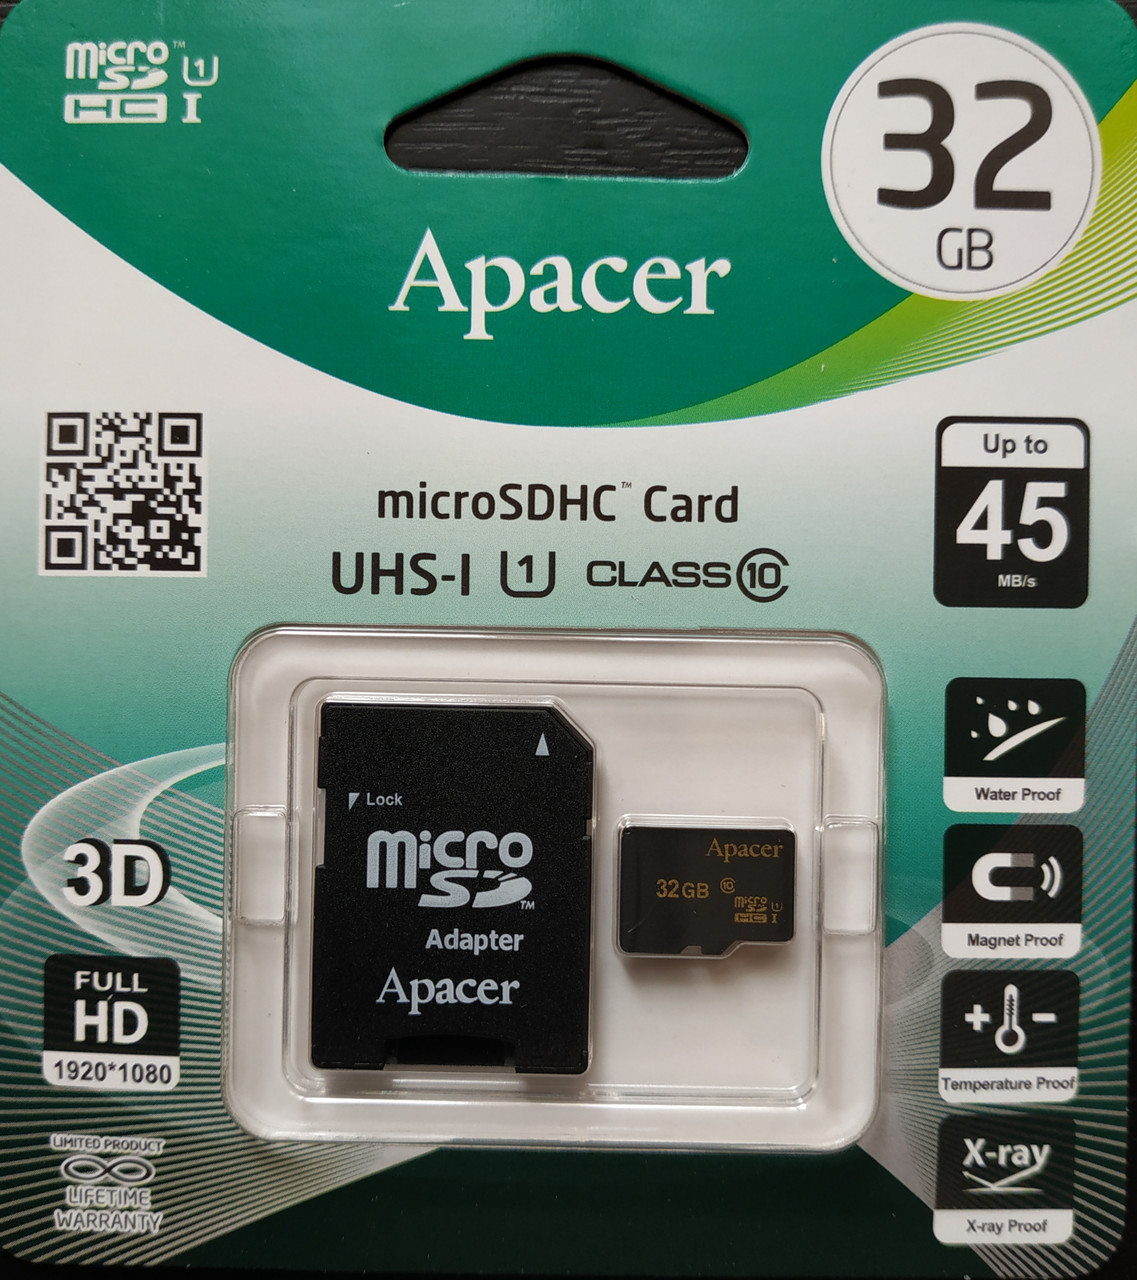 Рейтинг микро сд. Apacer карта памяти микро 1 ГБ. DNS карта SD 10 класс 32 ГБ. SD карта 32 ГБ вмуслюмове. Блок для СД карты.